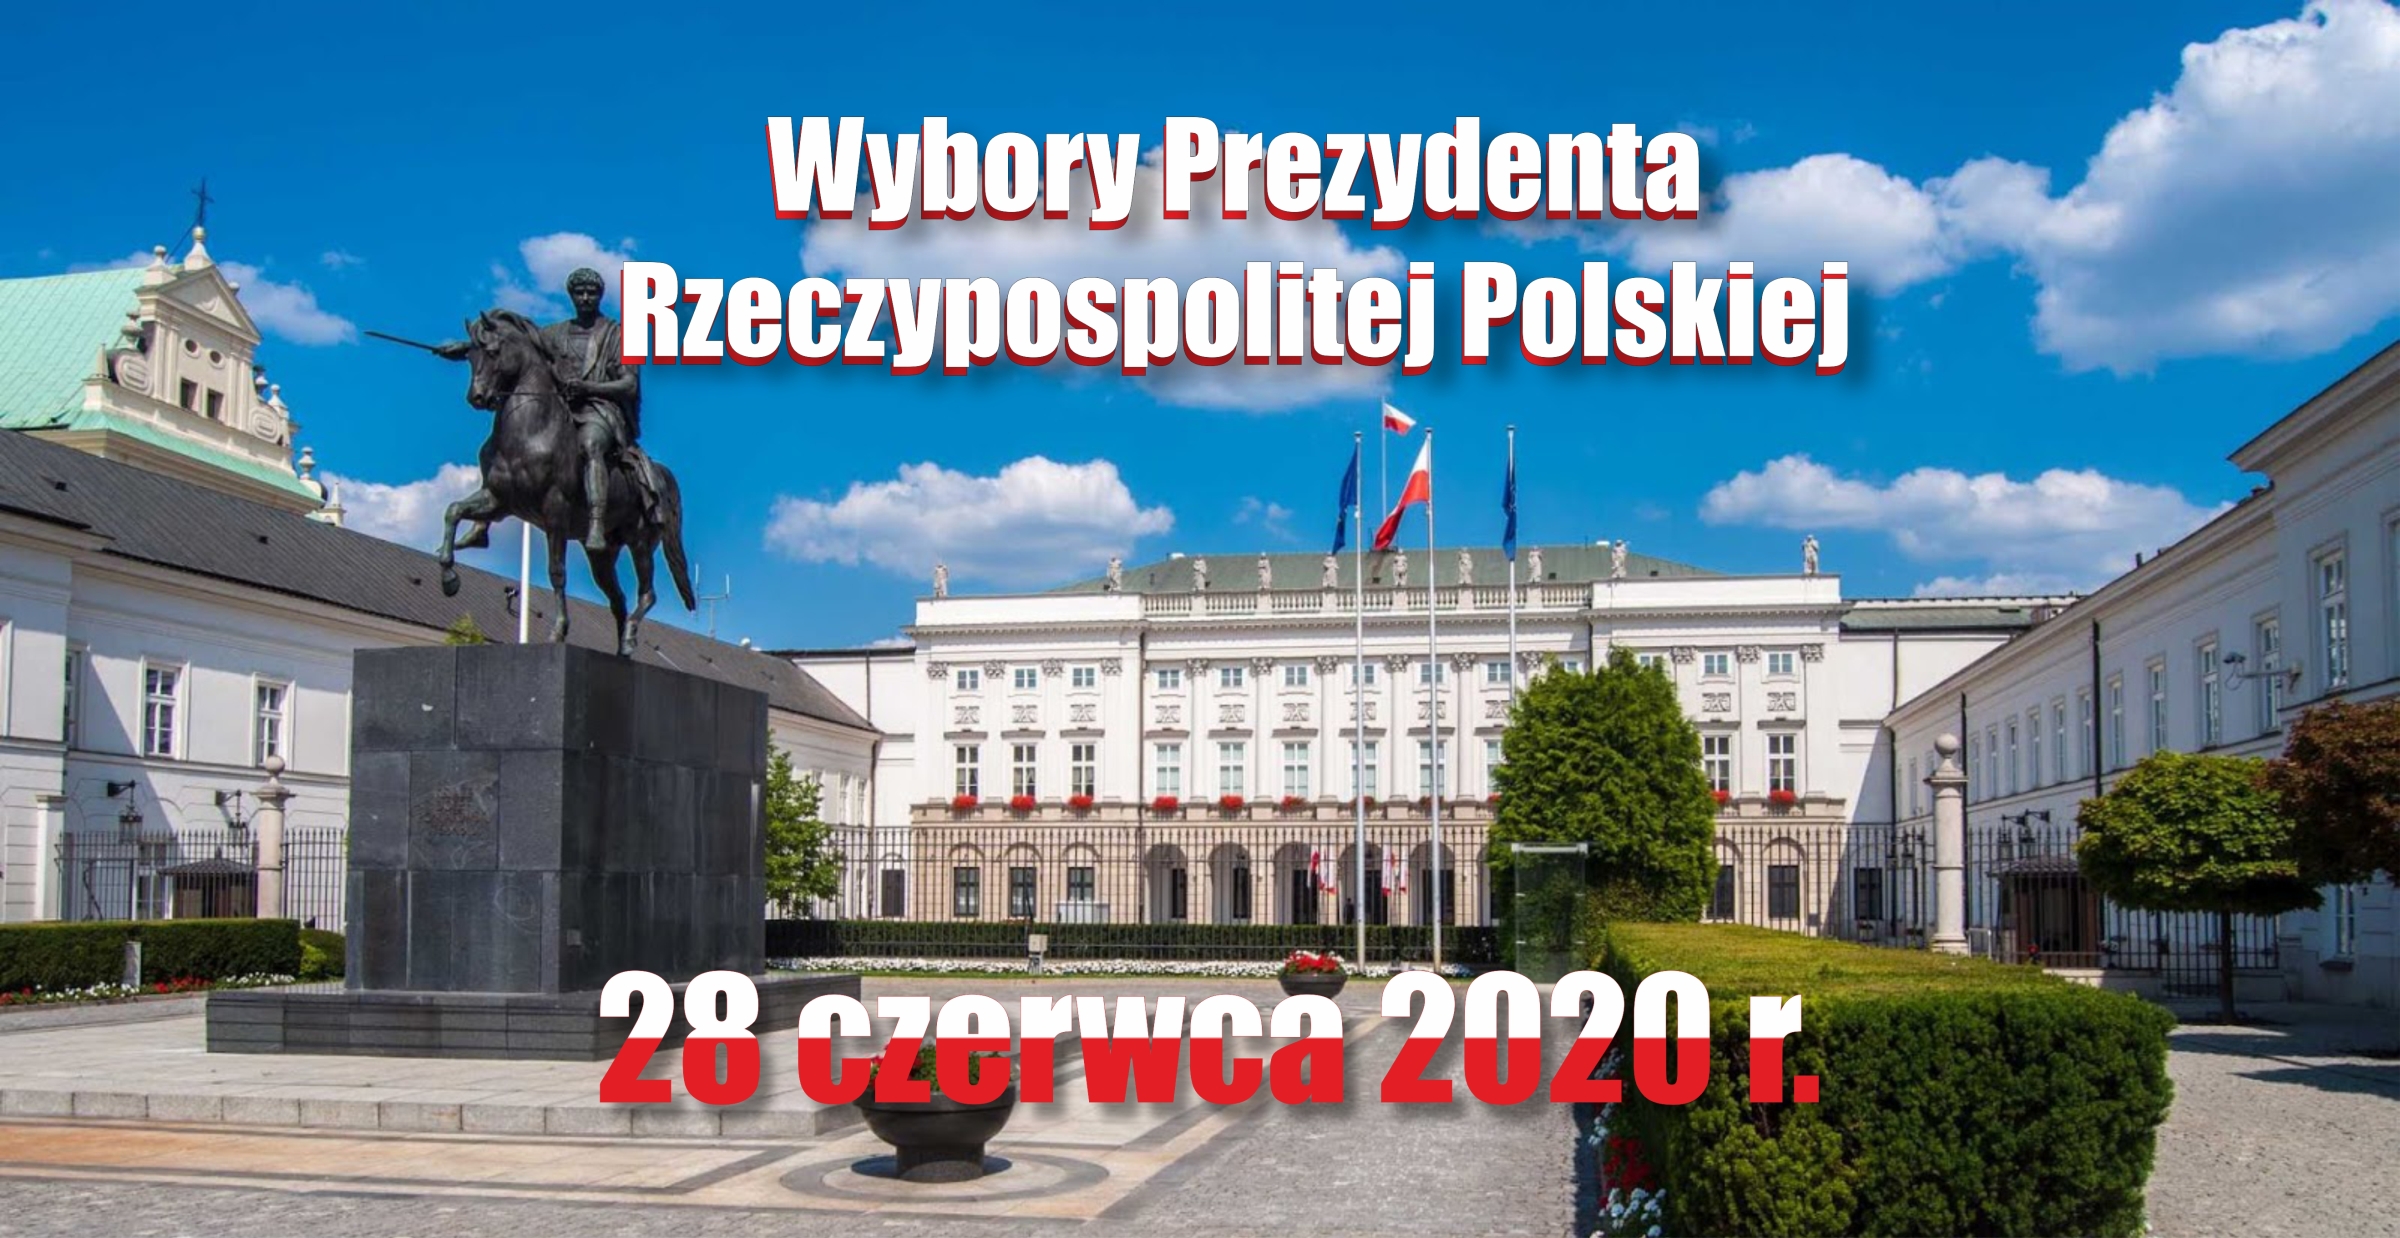 Baner Wybory Prezydenta Rzeczypospolitej Polskiej - 28 czerwca 2020 r.